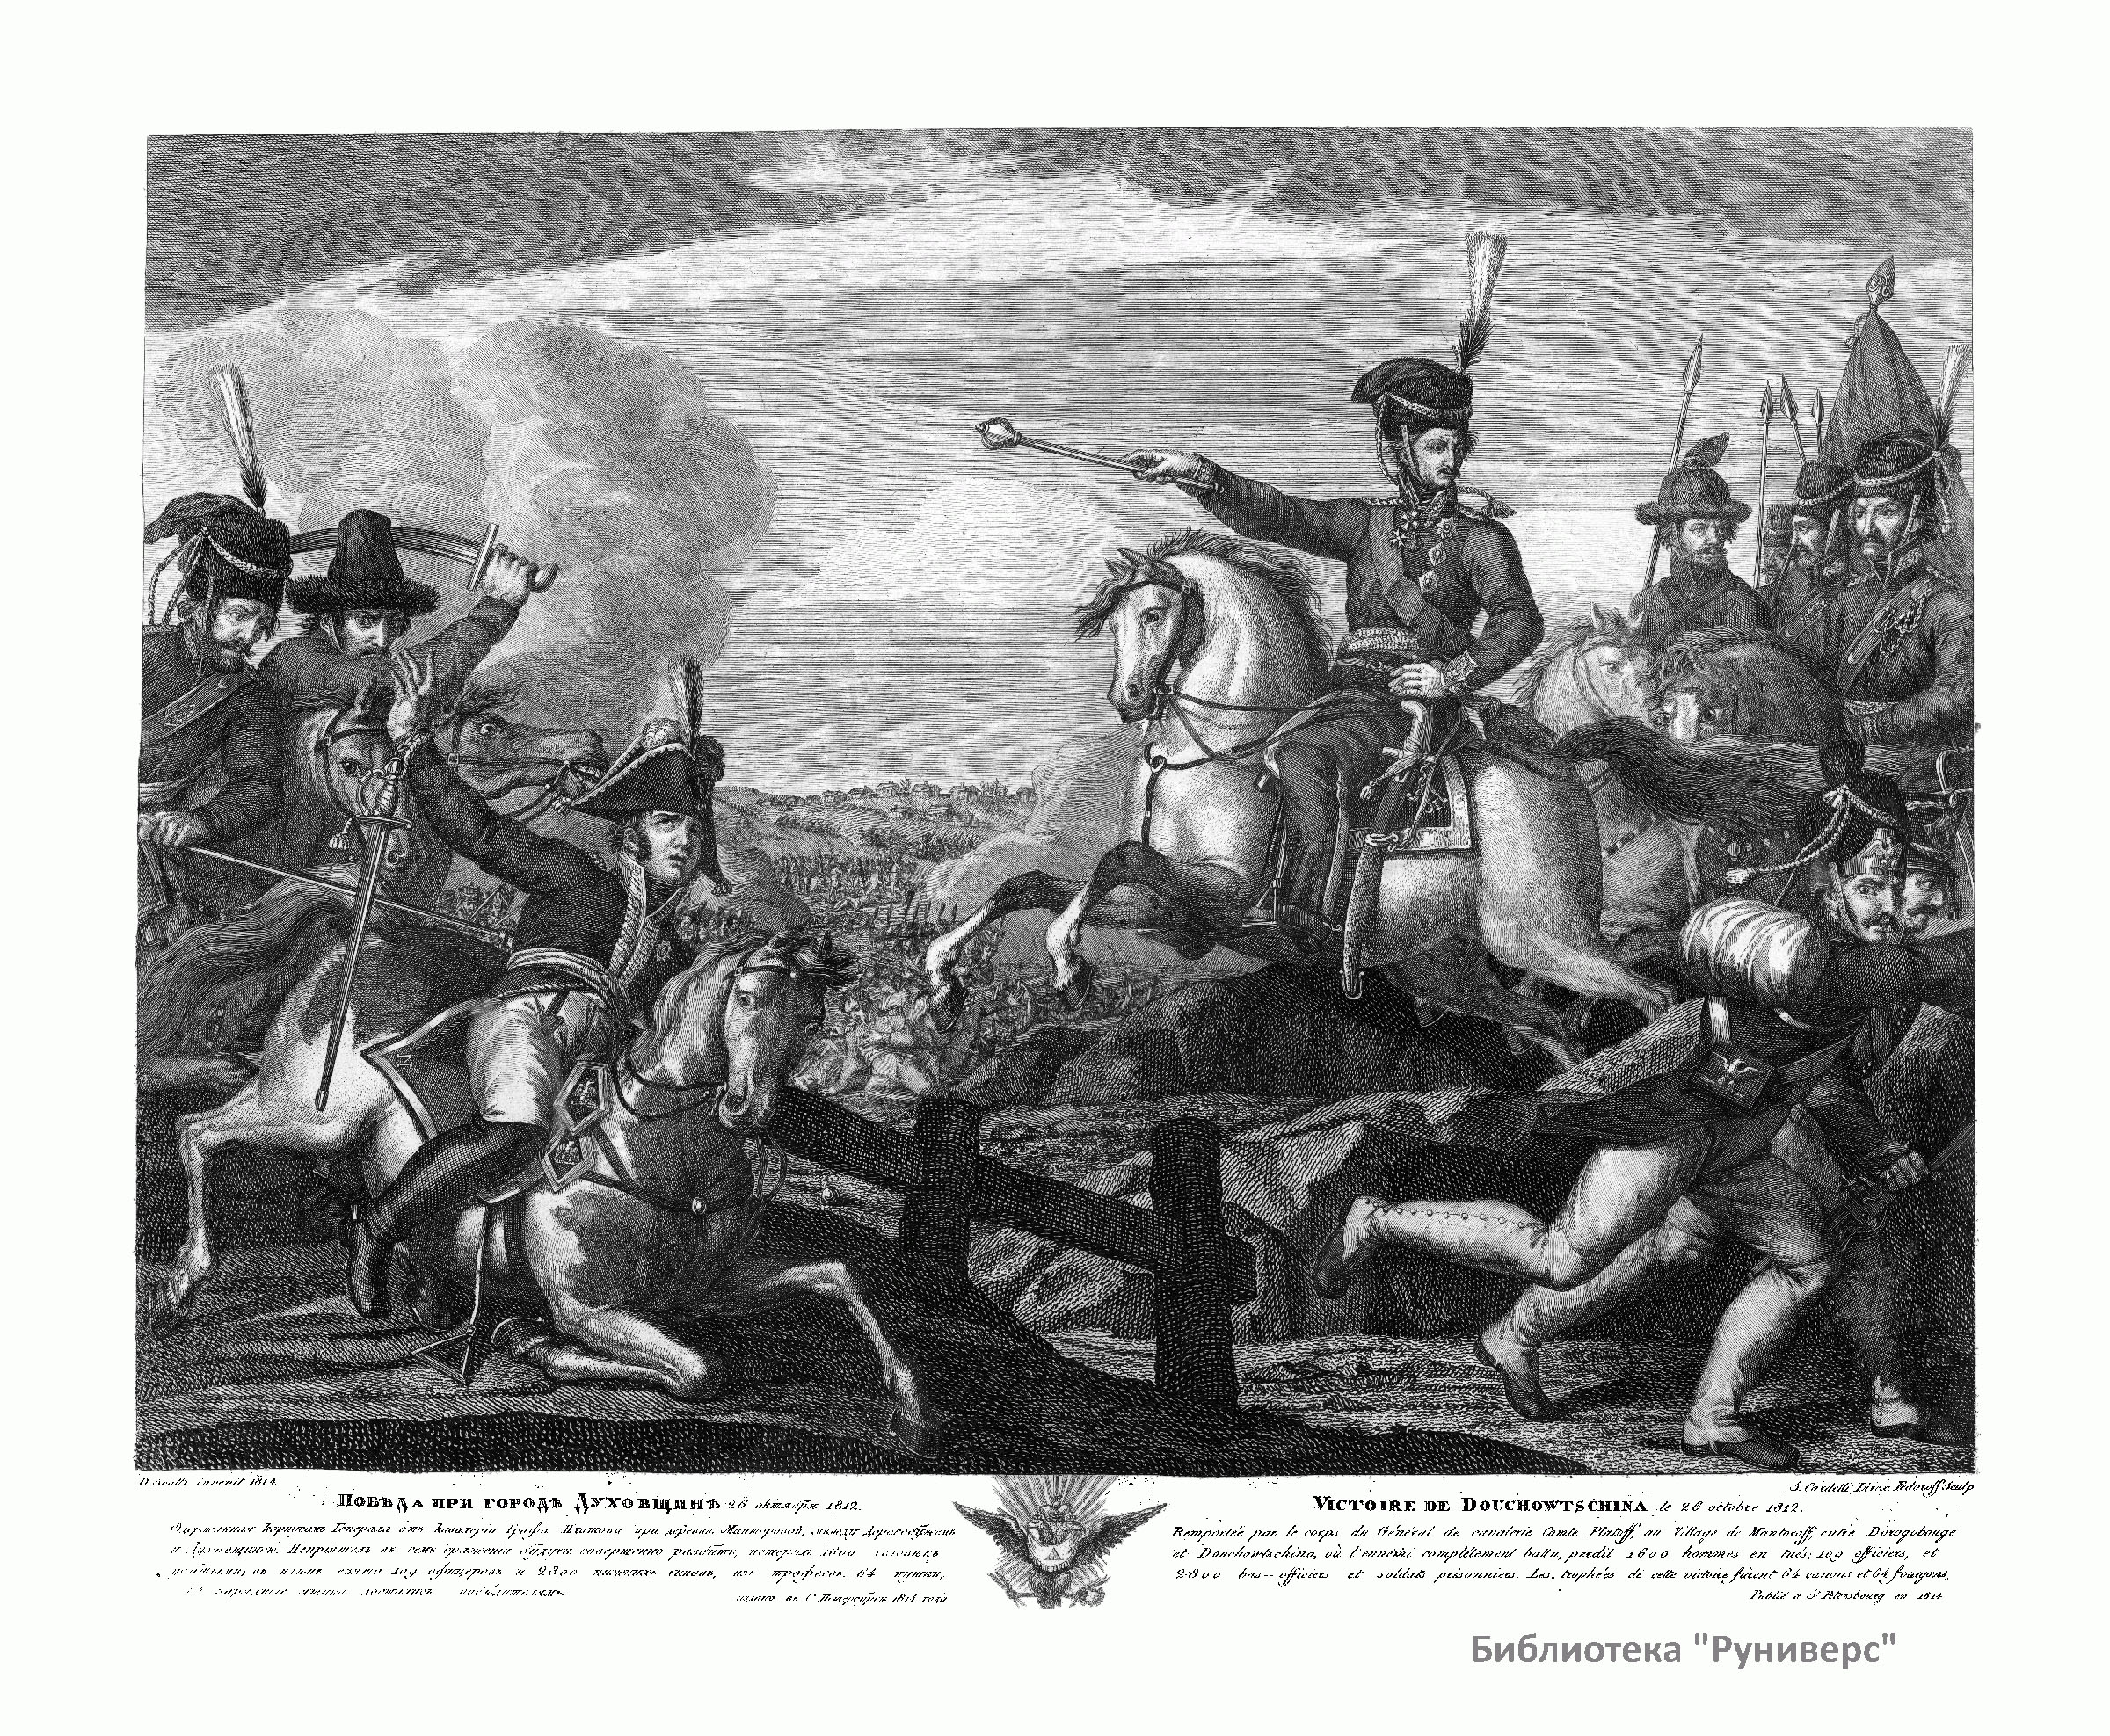 Победа при городе Духовщине 26 окт. 1812